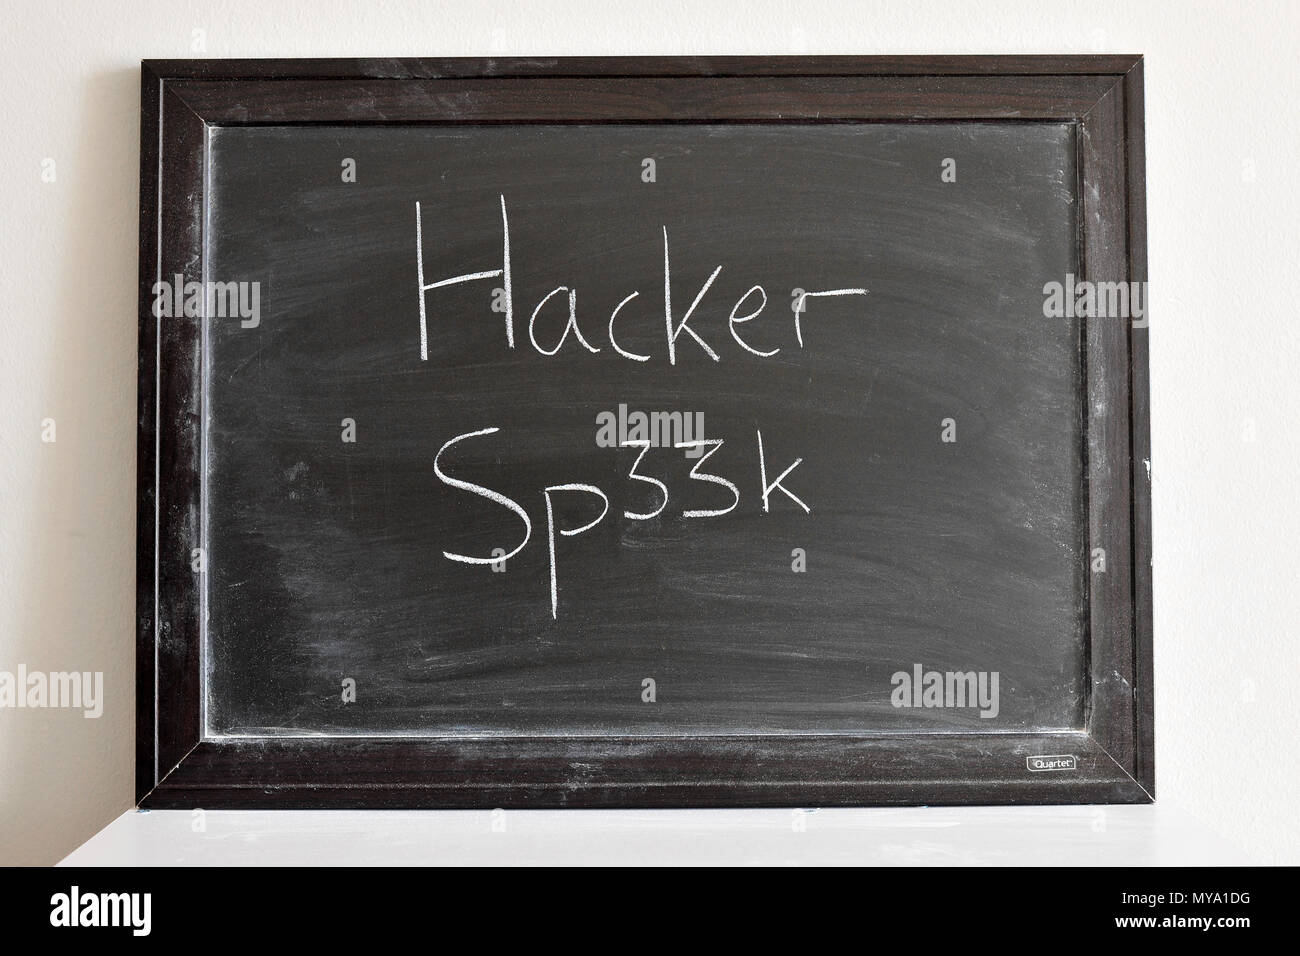 Hacker Sp33k written in white chalk on a blackboard Stock Photo